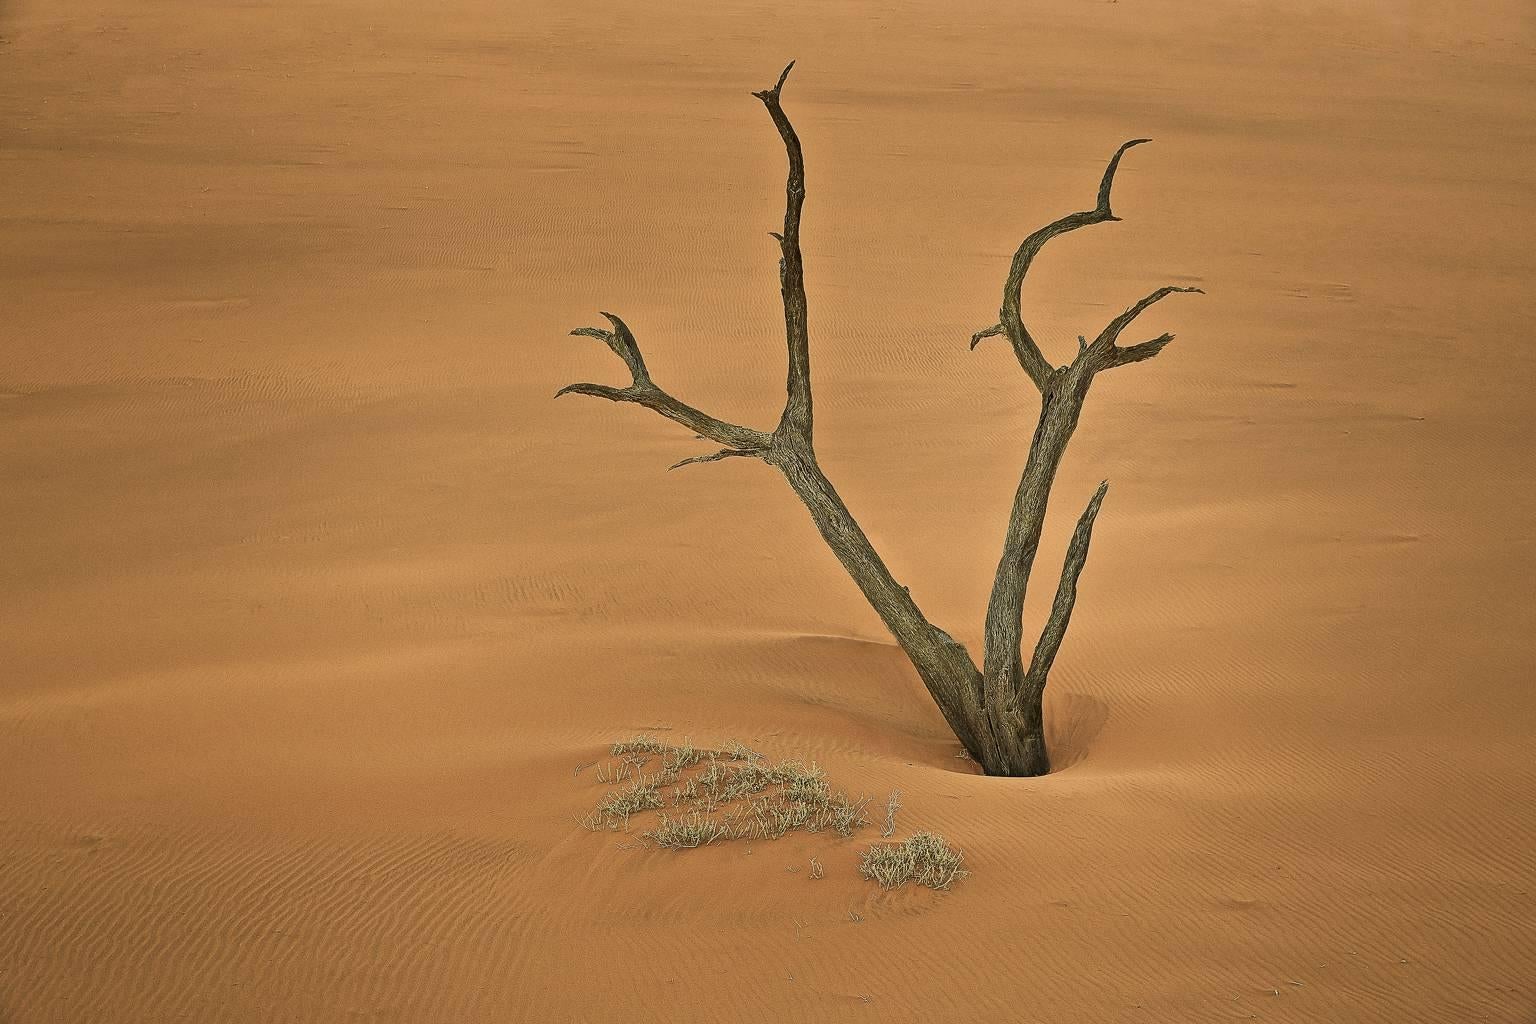 Chris Gordaneer Color Photograph - Dead Vlei, Namibia